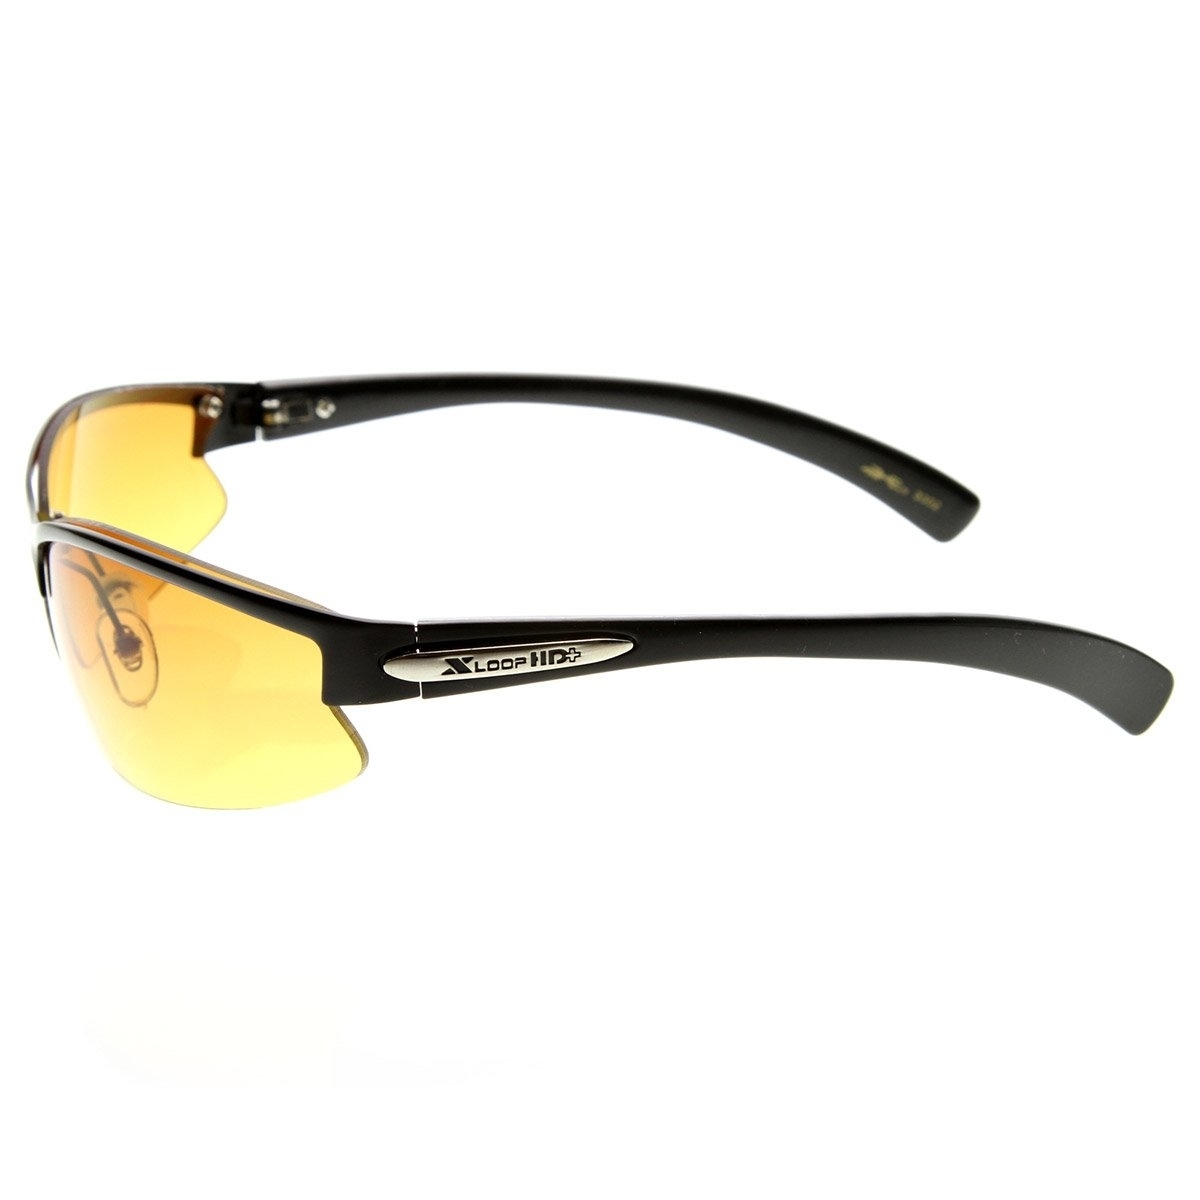 X-Loop Brand Eyewear HD Lens Metal Half Frame Semi-Rimless Sports X-Loop - Black